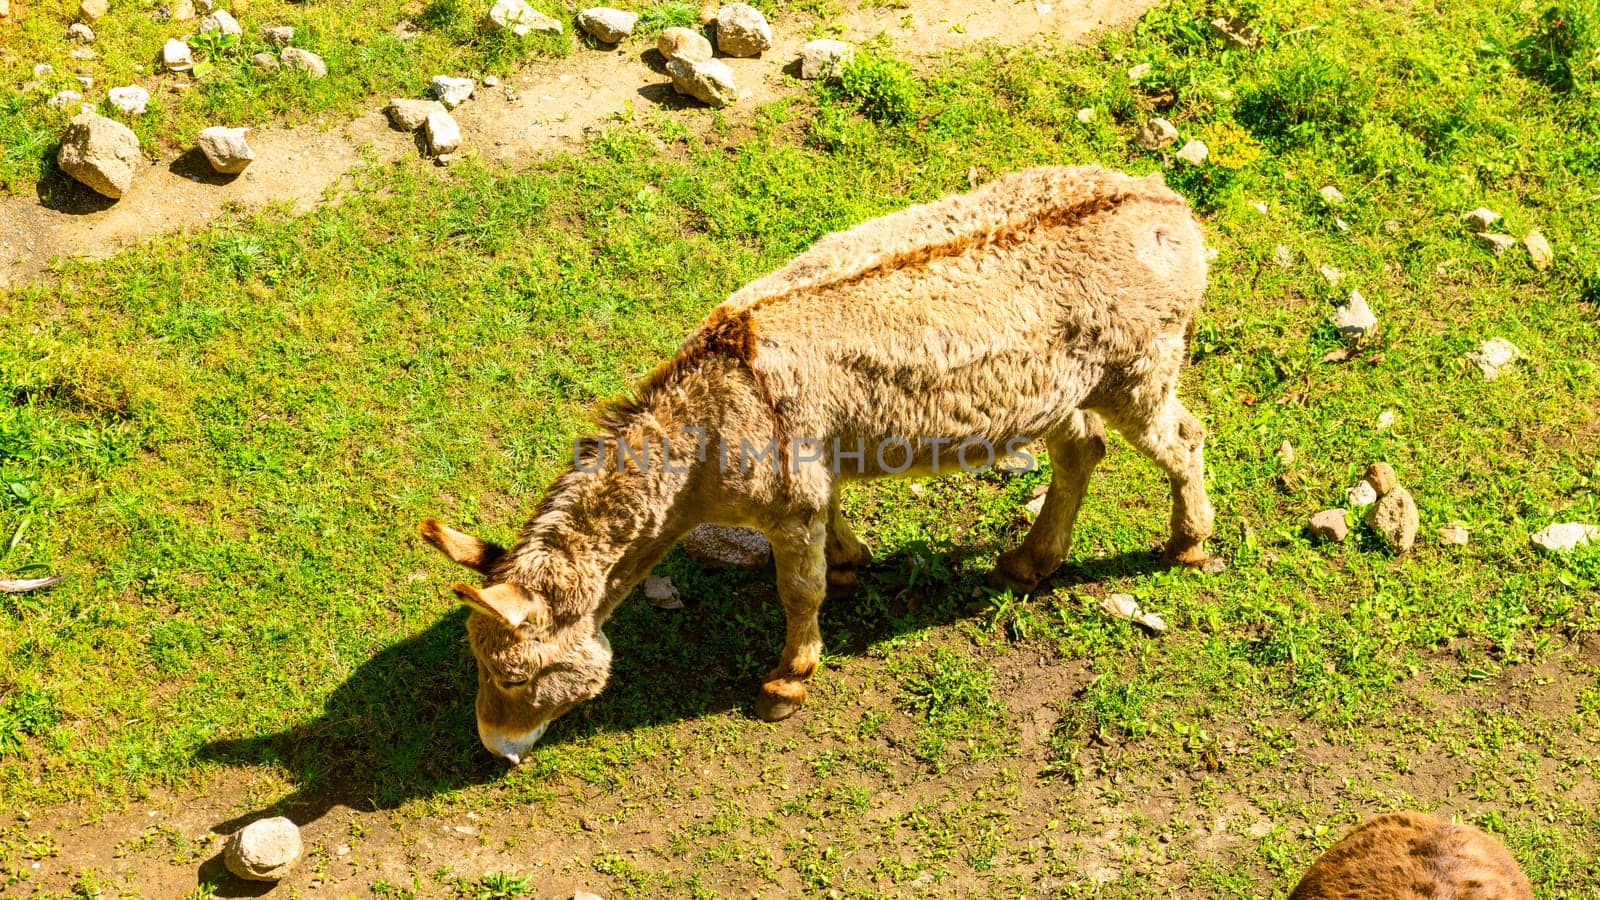 Donkey eating grass by vladispas